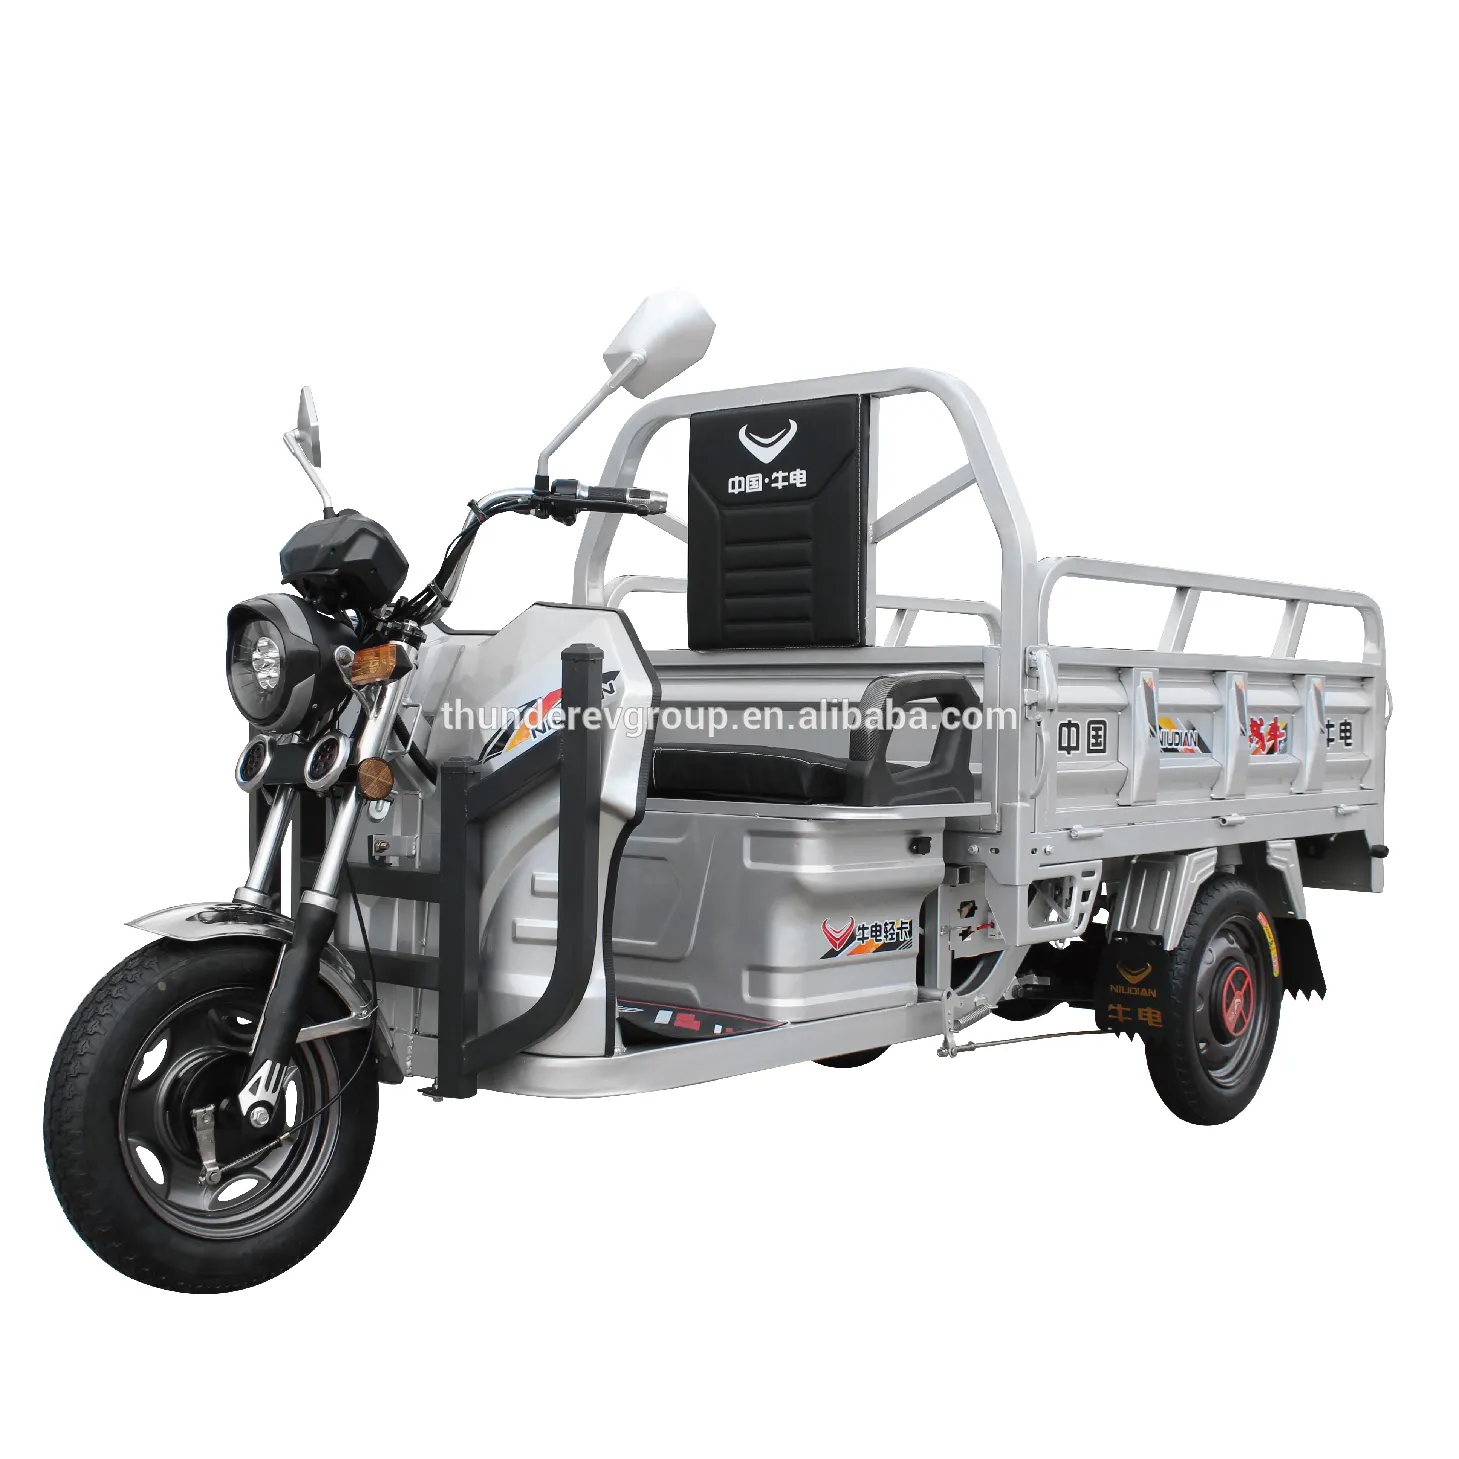 دراجة ثلاثية العجلات صينية الأعلى مبيعًا لنقل البضائع سكوتر بالجازولين بثلاث عجلات بسعر رخيص